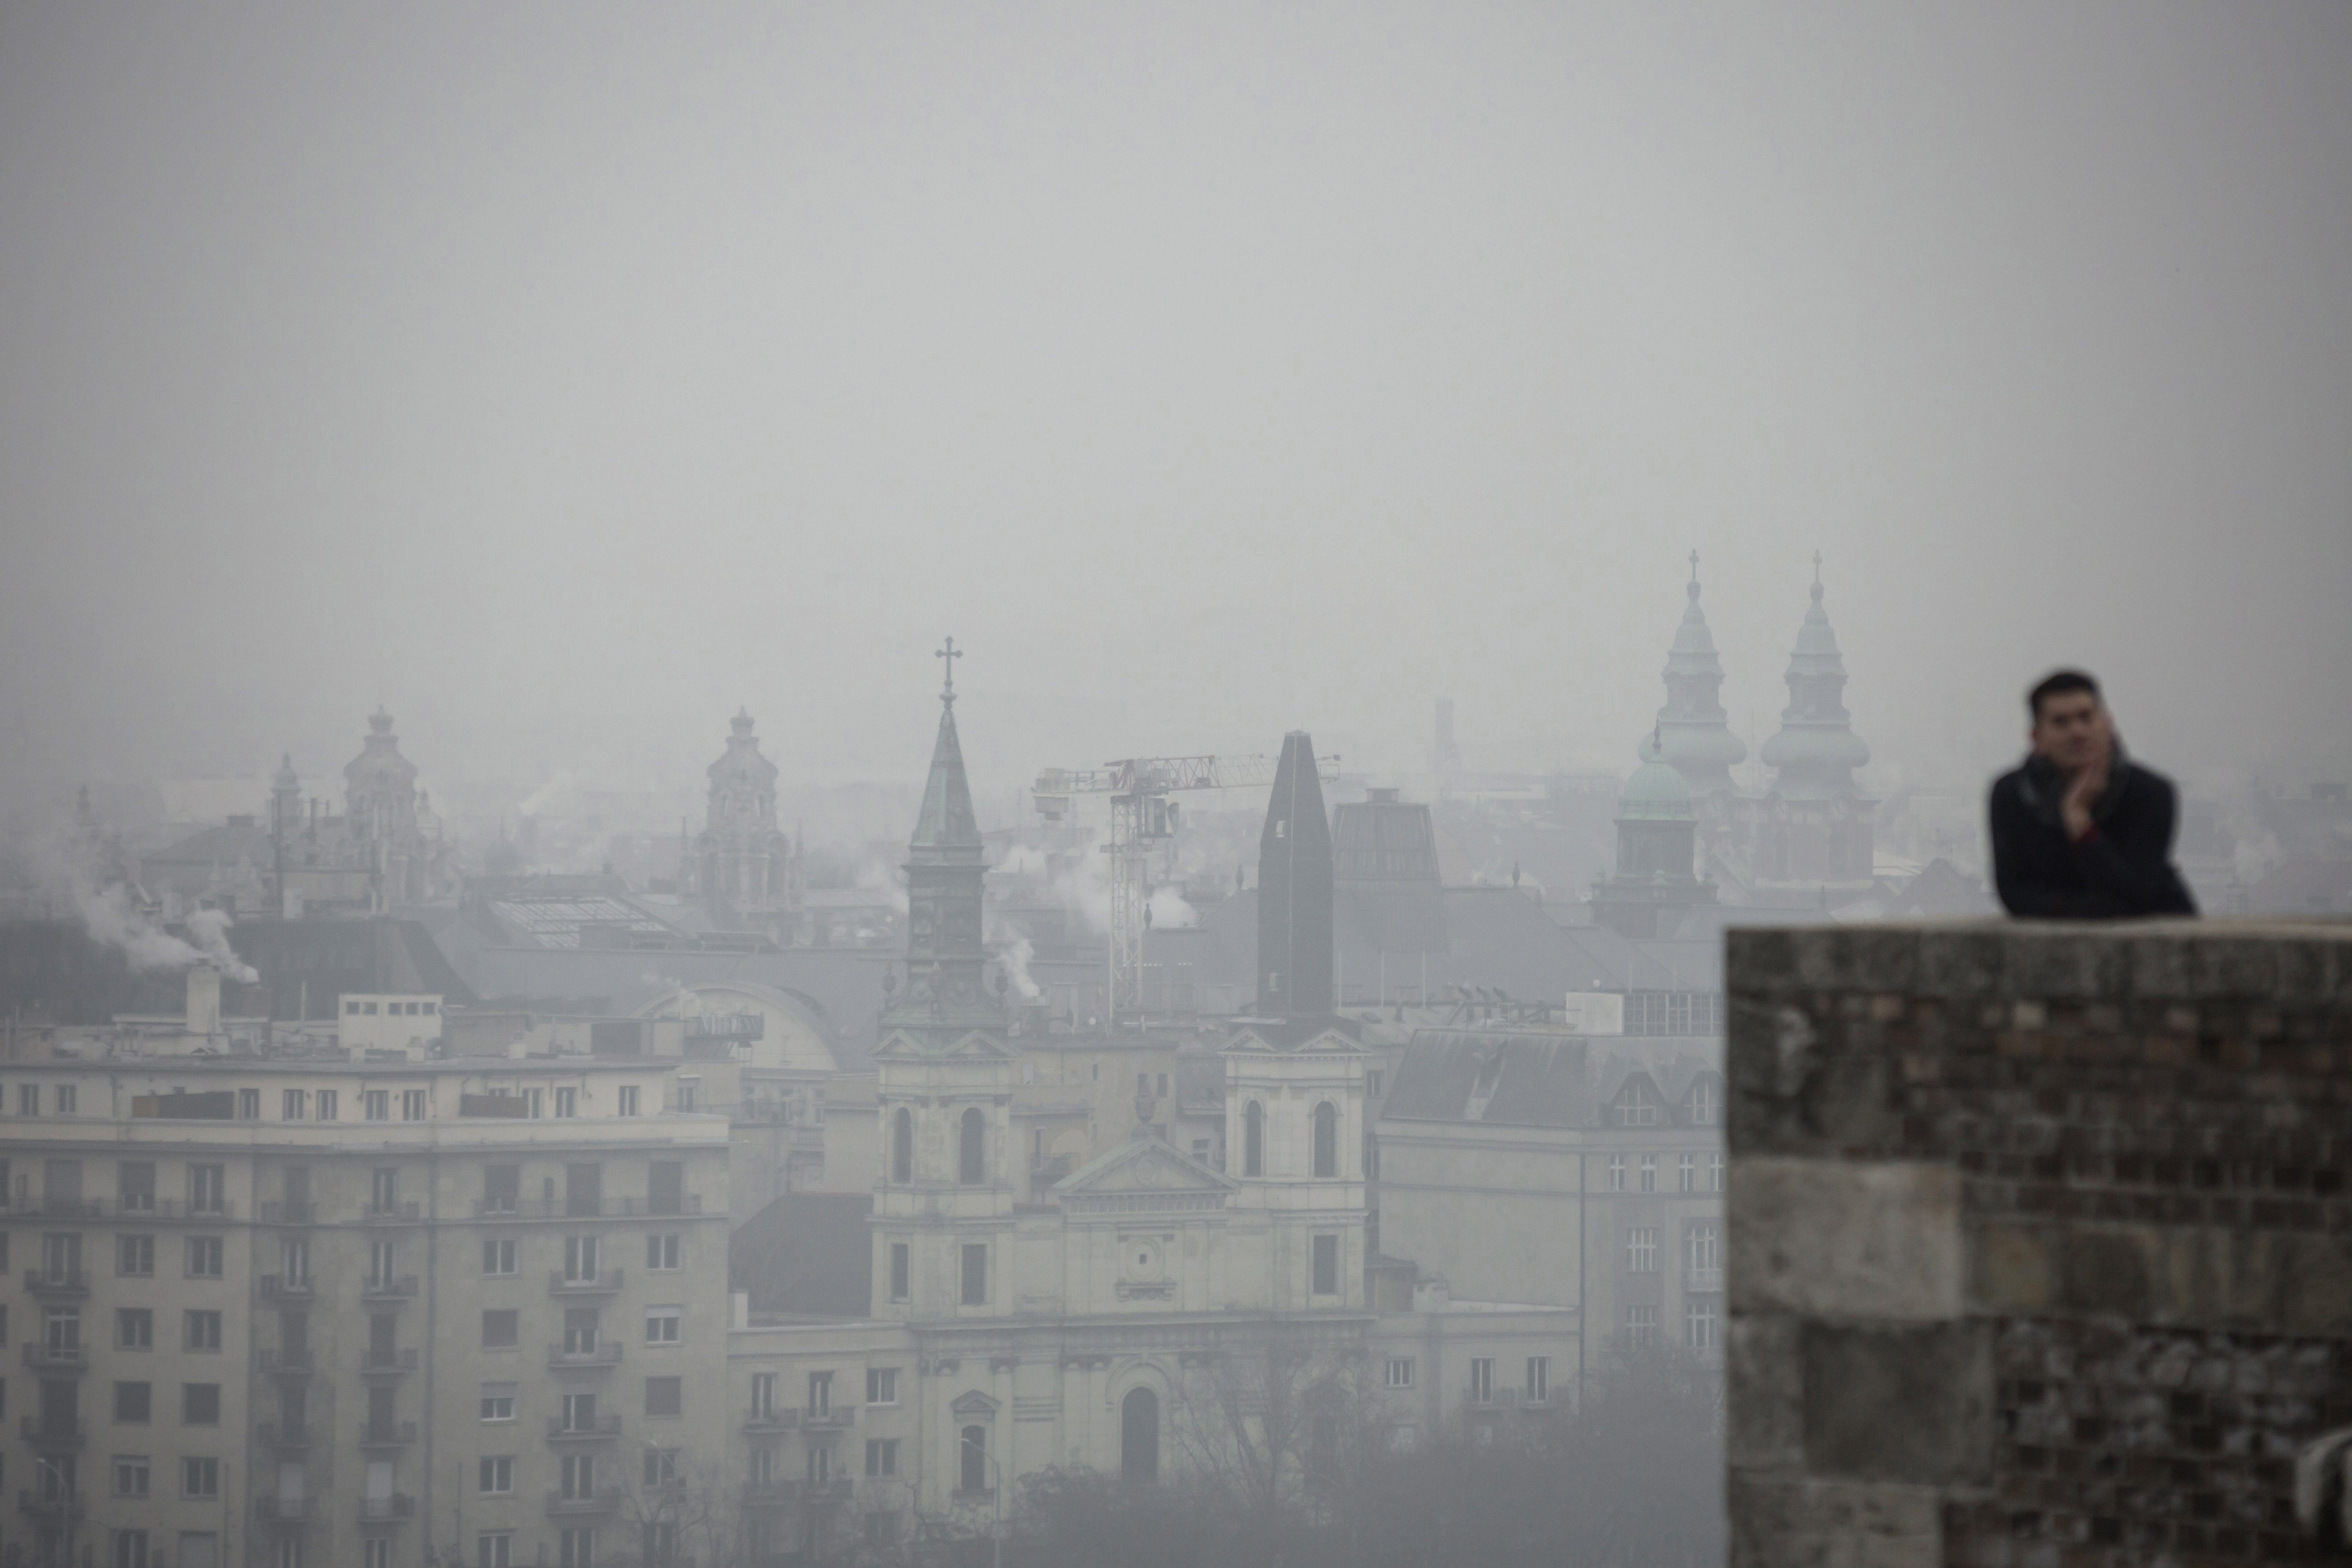 A Levegő Munkacsoport nem veszi át a Budapestért díjat, mert évtizedek alatt sem tudták elérni, hogy javuljon a fővárosi levegő minősége